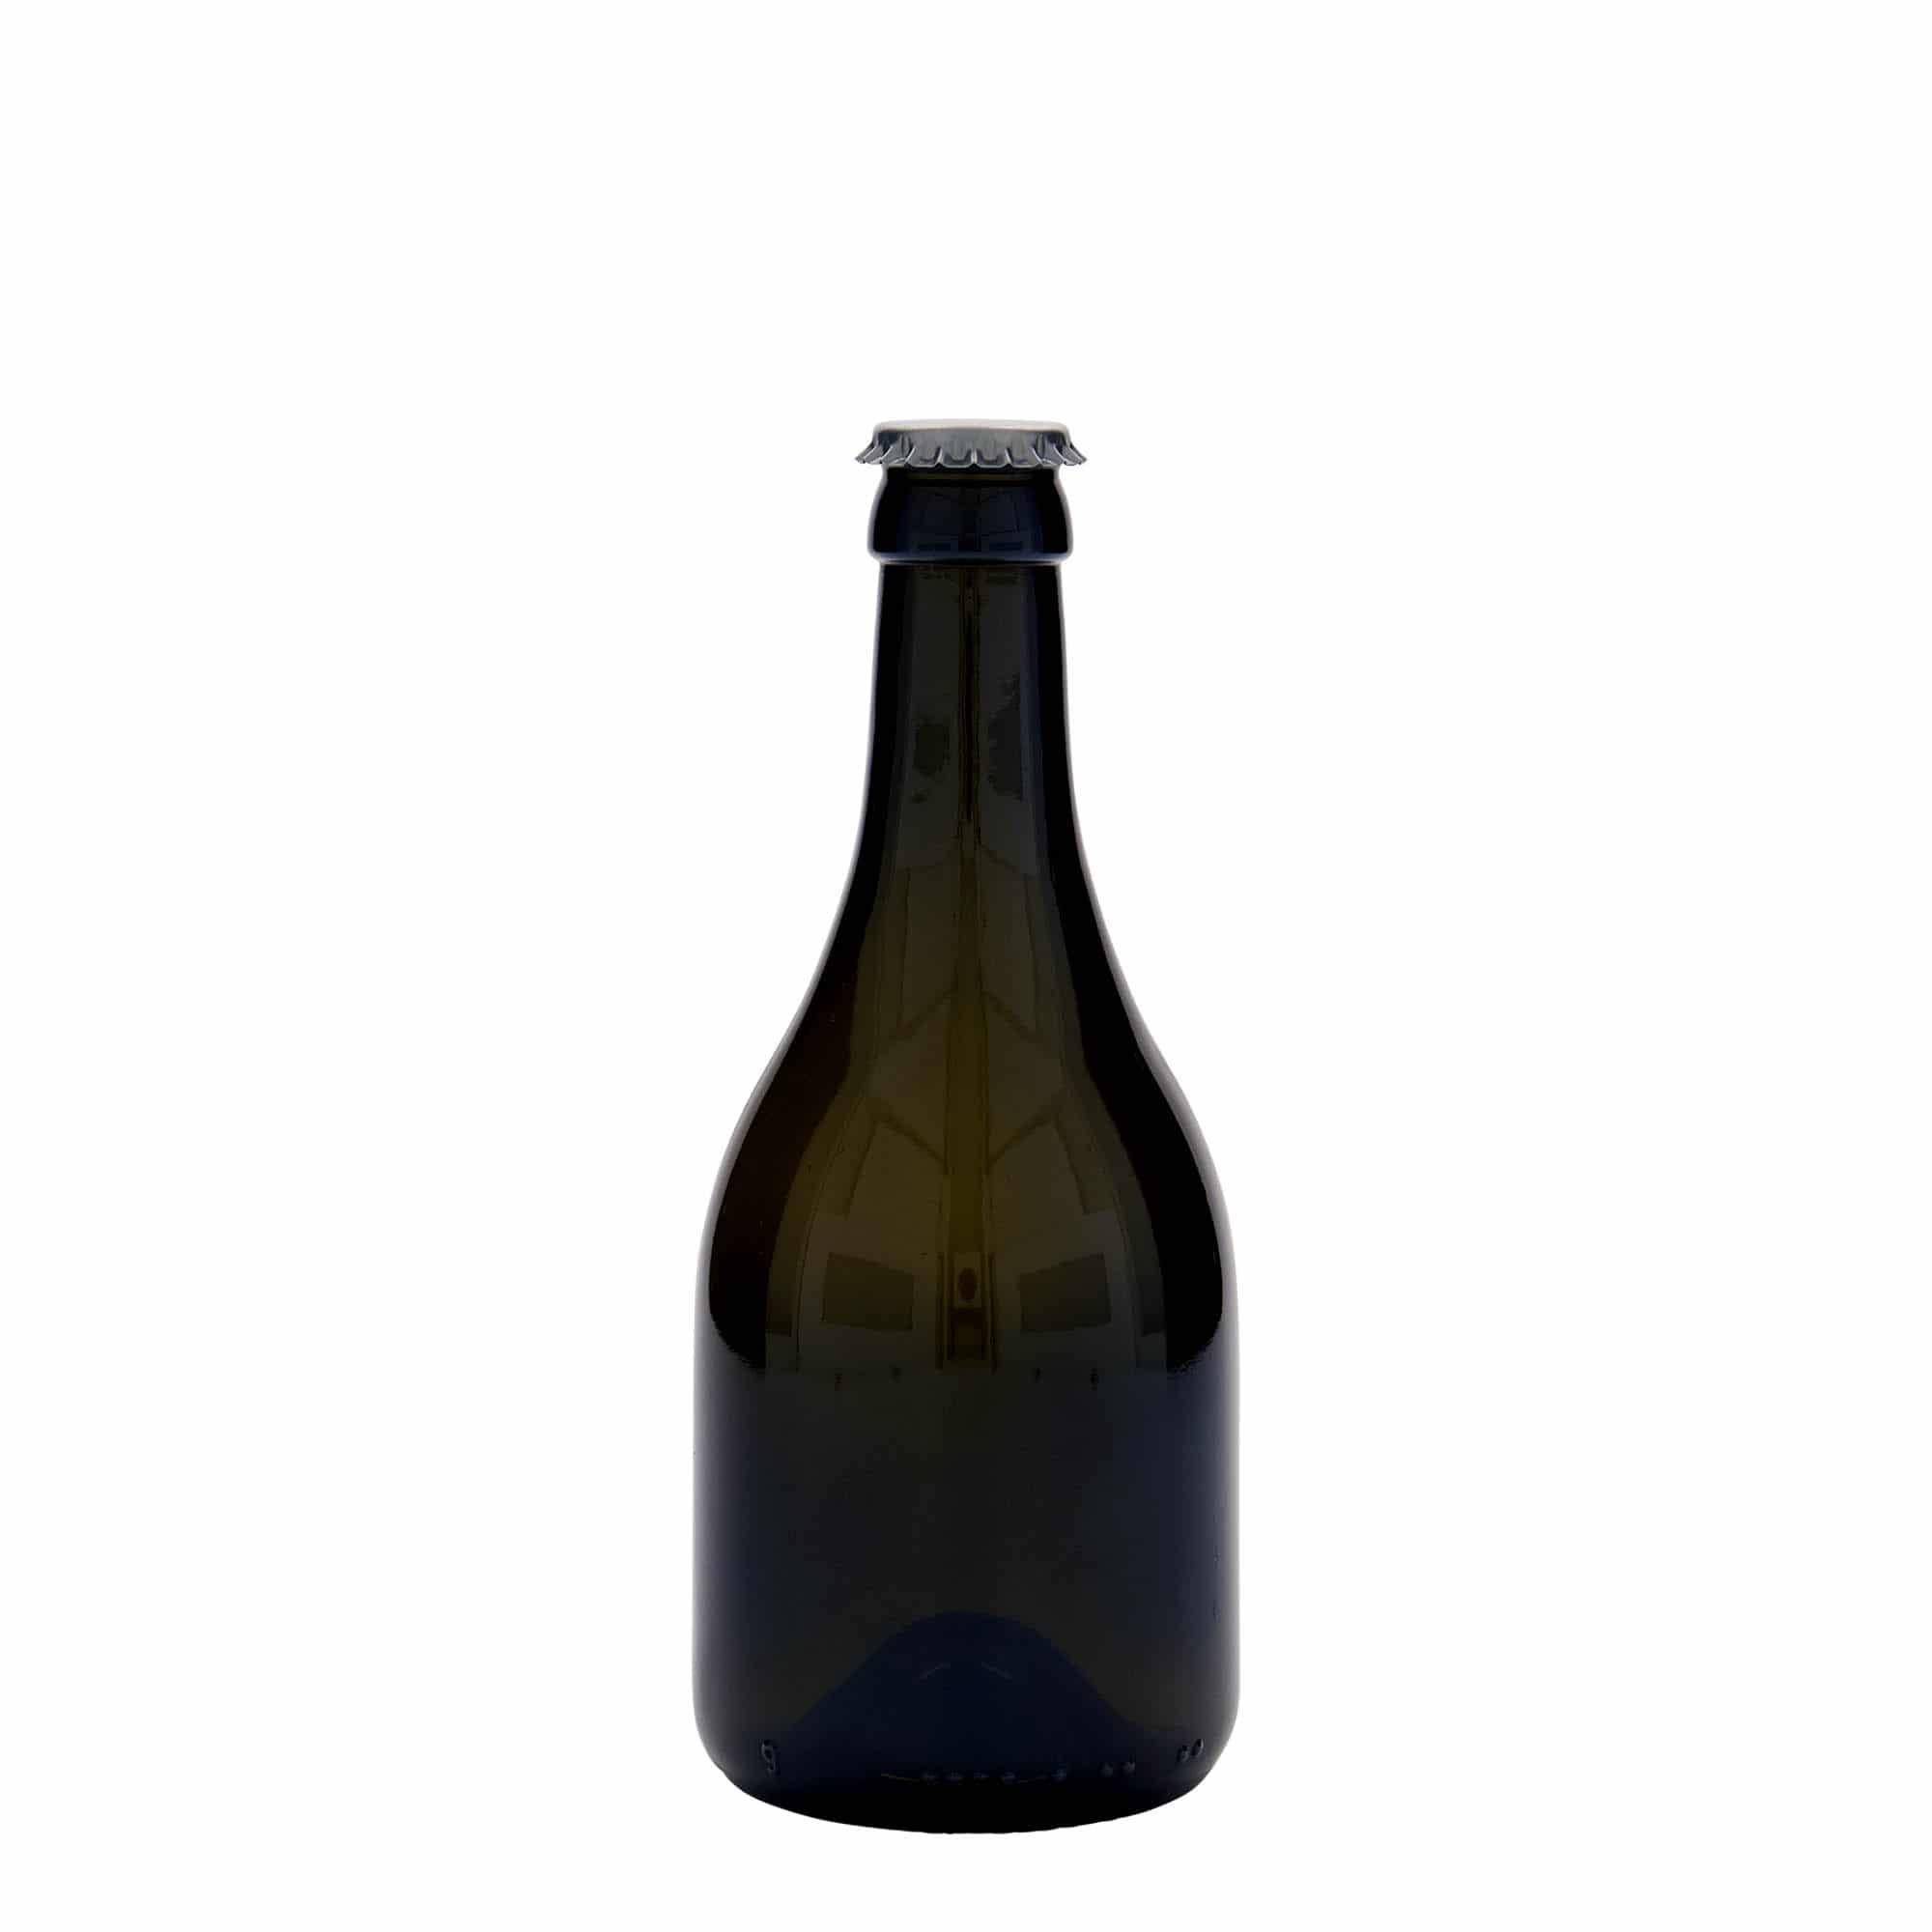 330 ml butelka do piwa 'Horta', szkło, kolor zielony antyczny, zamknięcie: kapsel